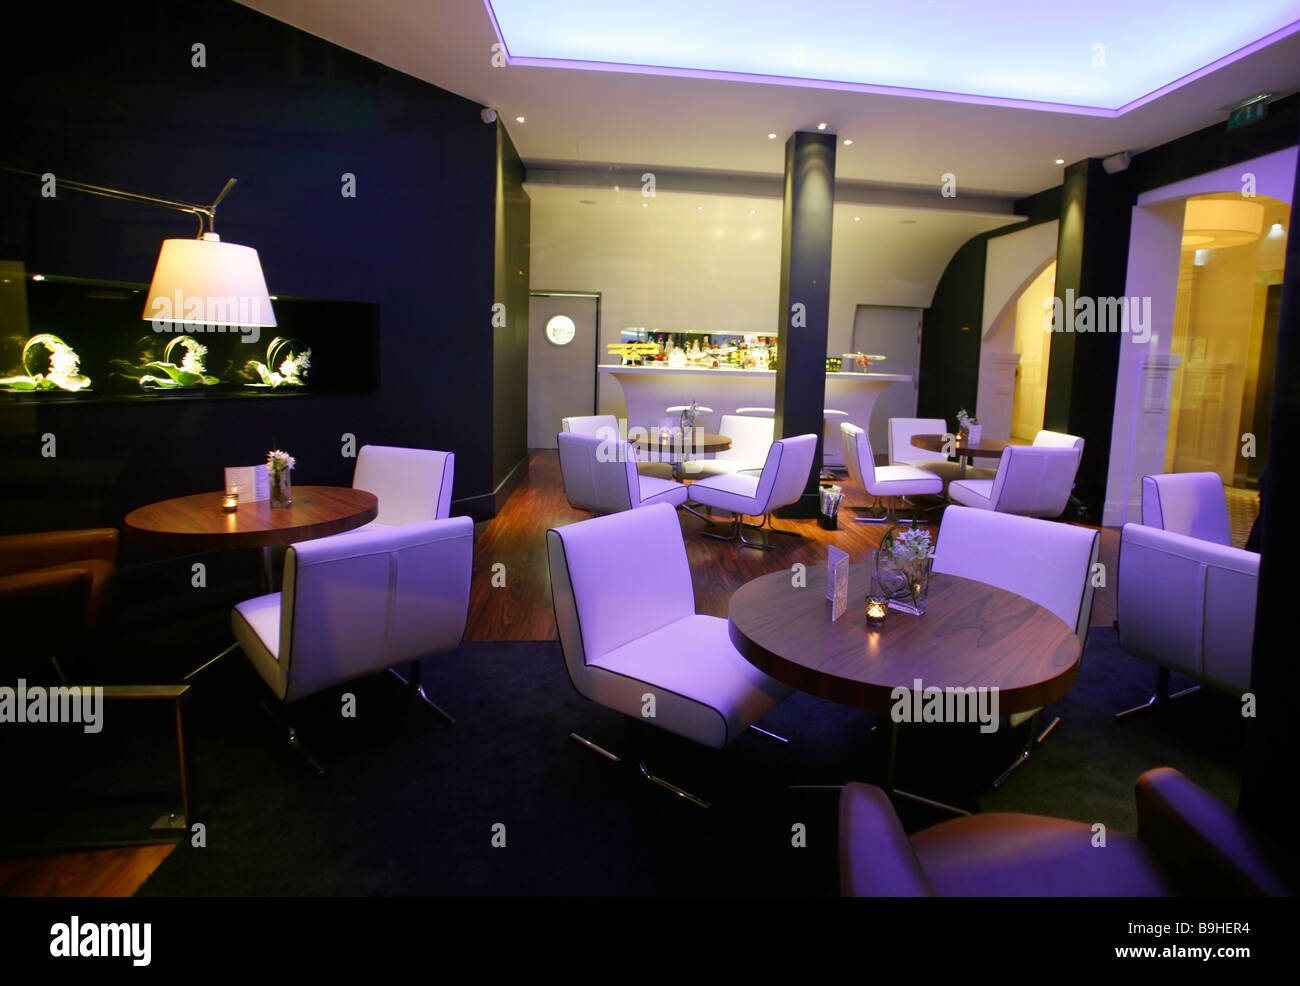 Elegante lounge bar con sillas blancas e iluminación ambiental Foto de stock